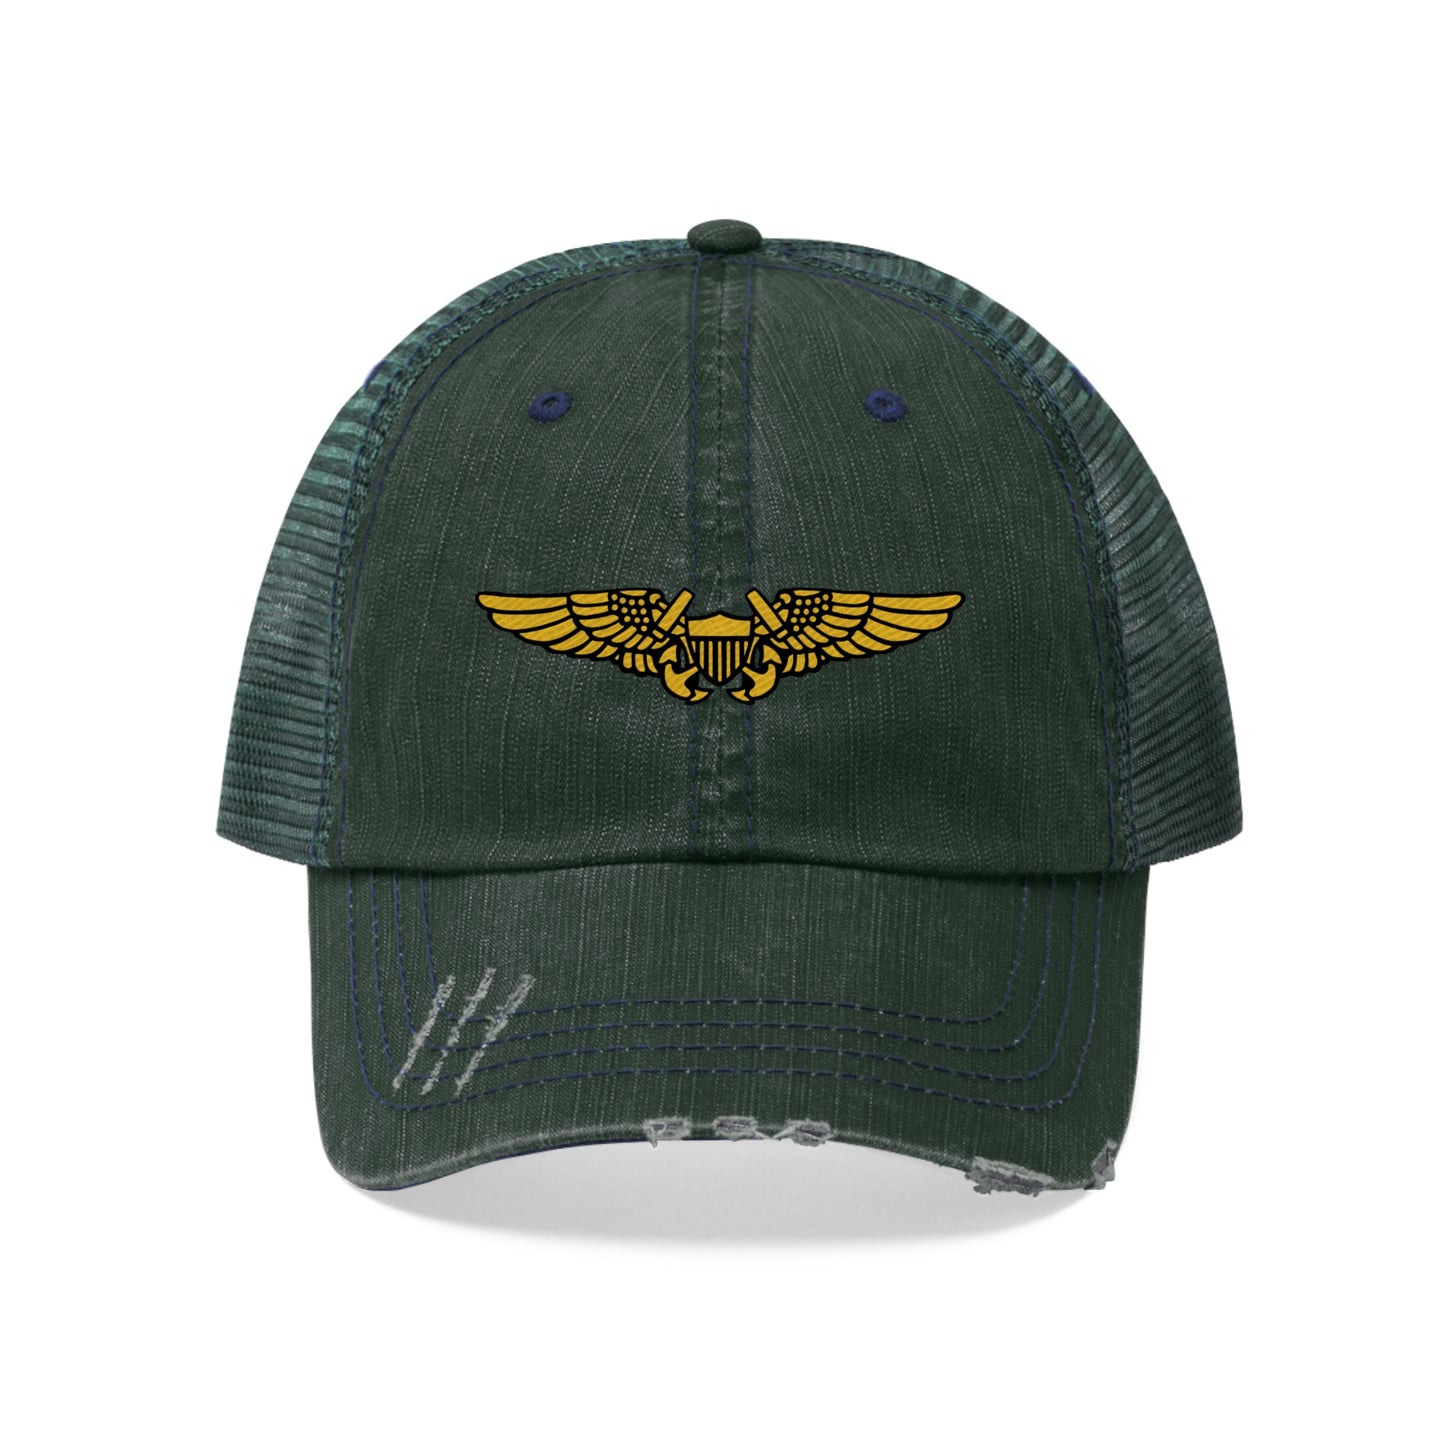 Naval Flight Officer Trucker Hat